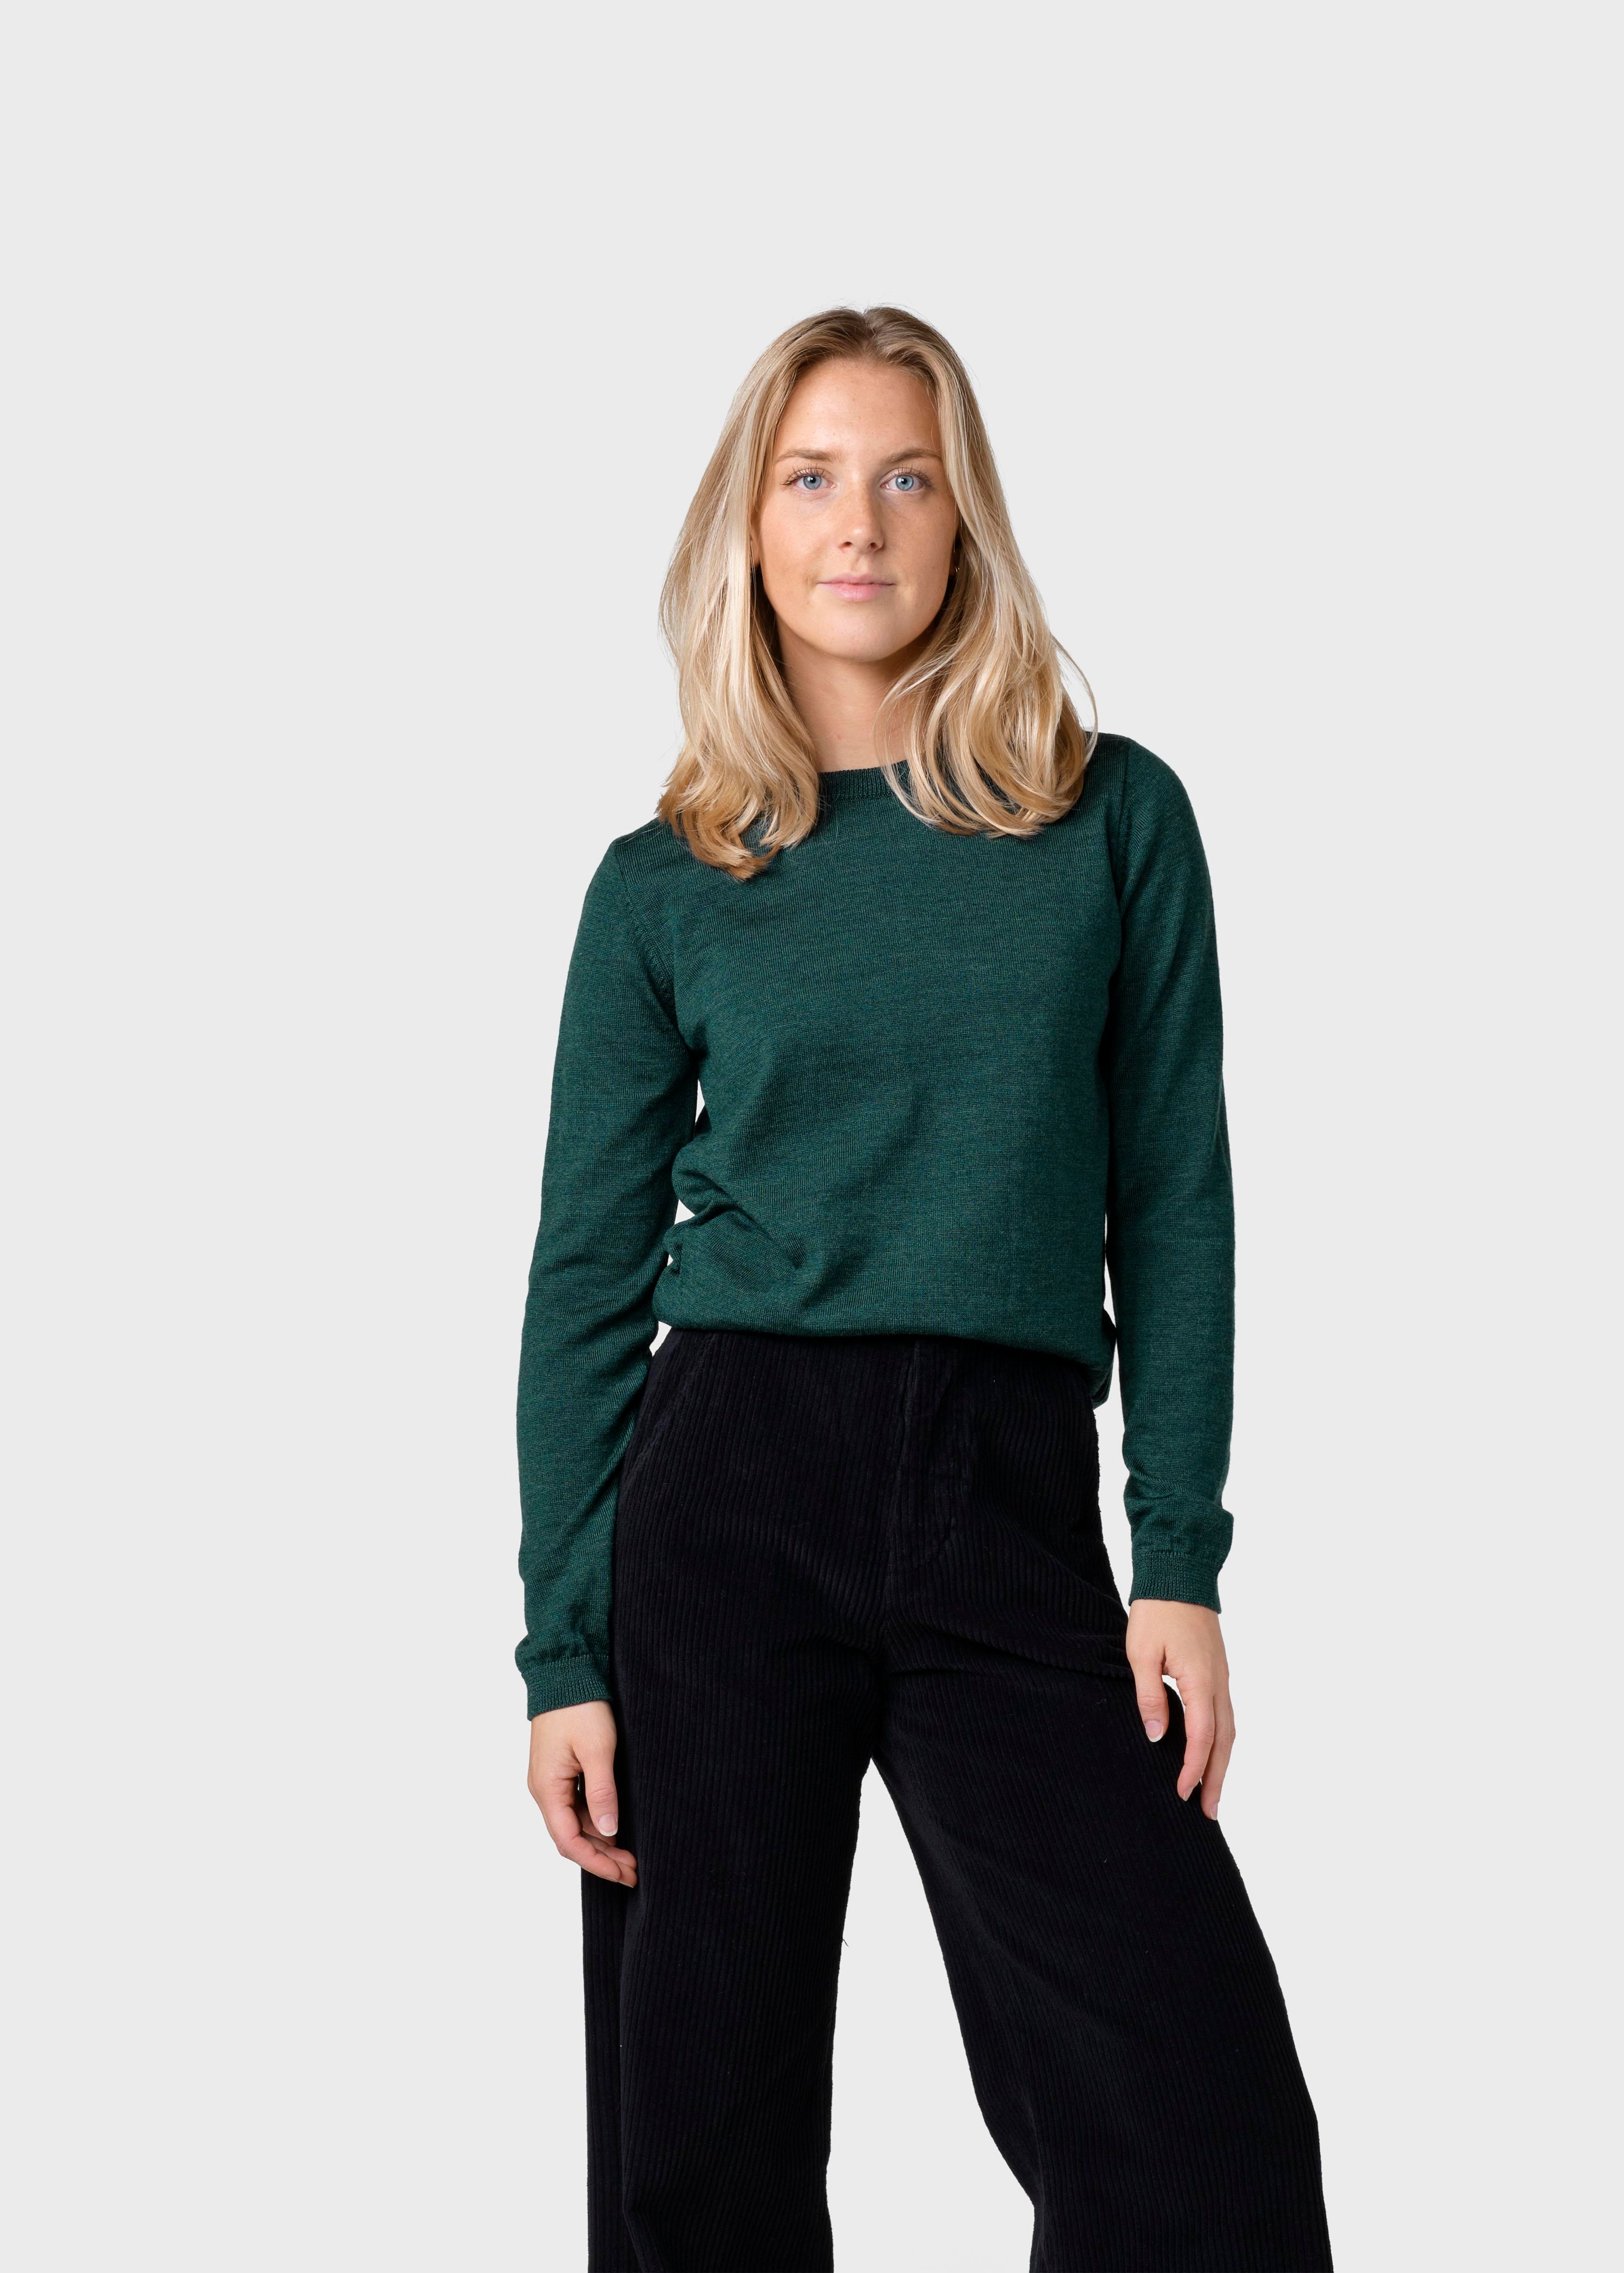 Women's thin Merino Wool Sweater Green